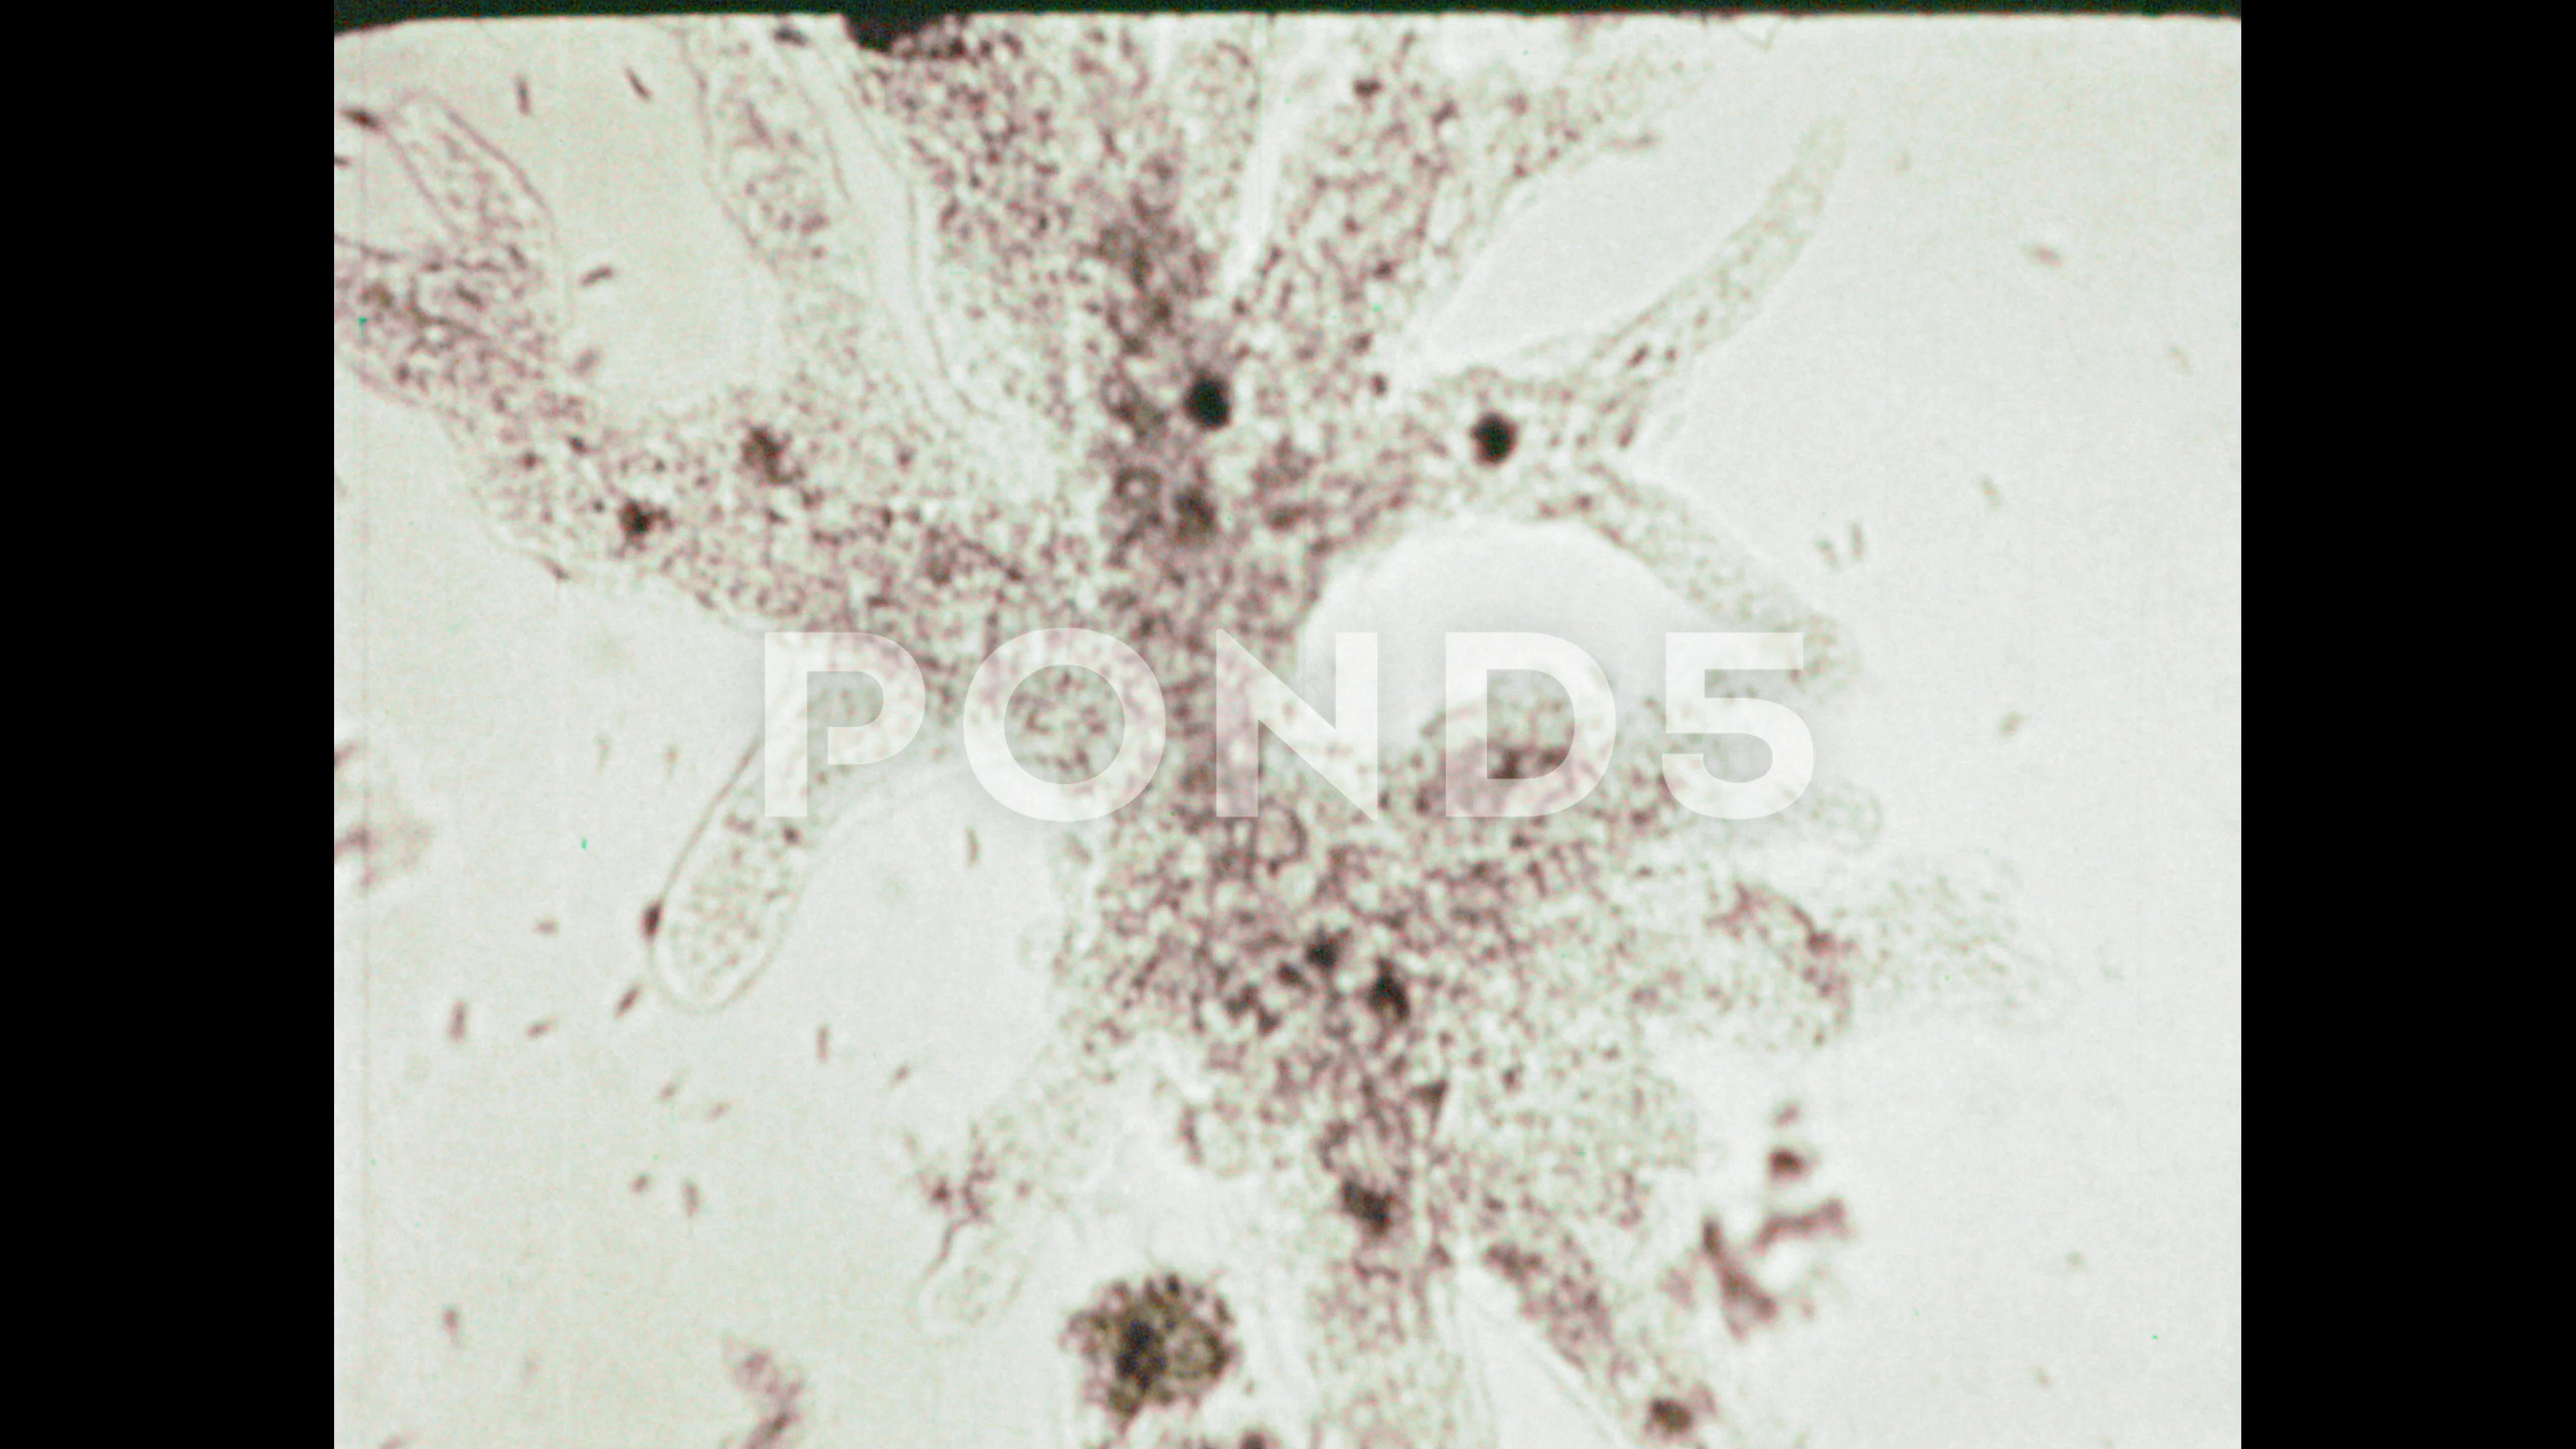 amoeba proteus 400x